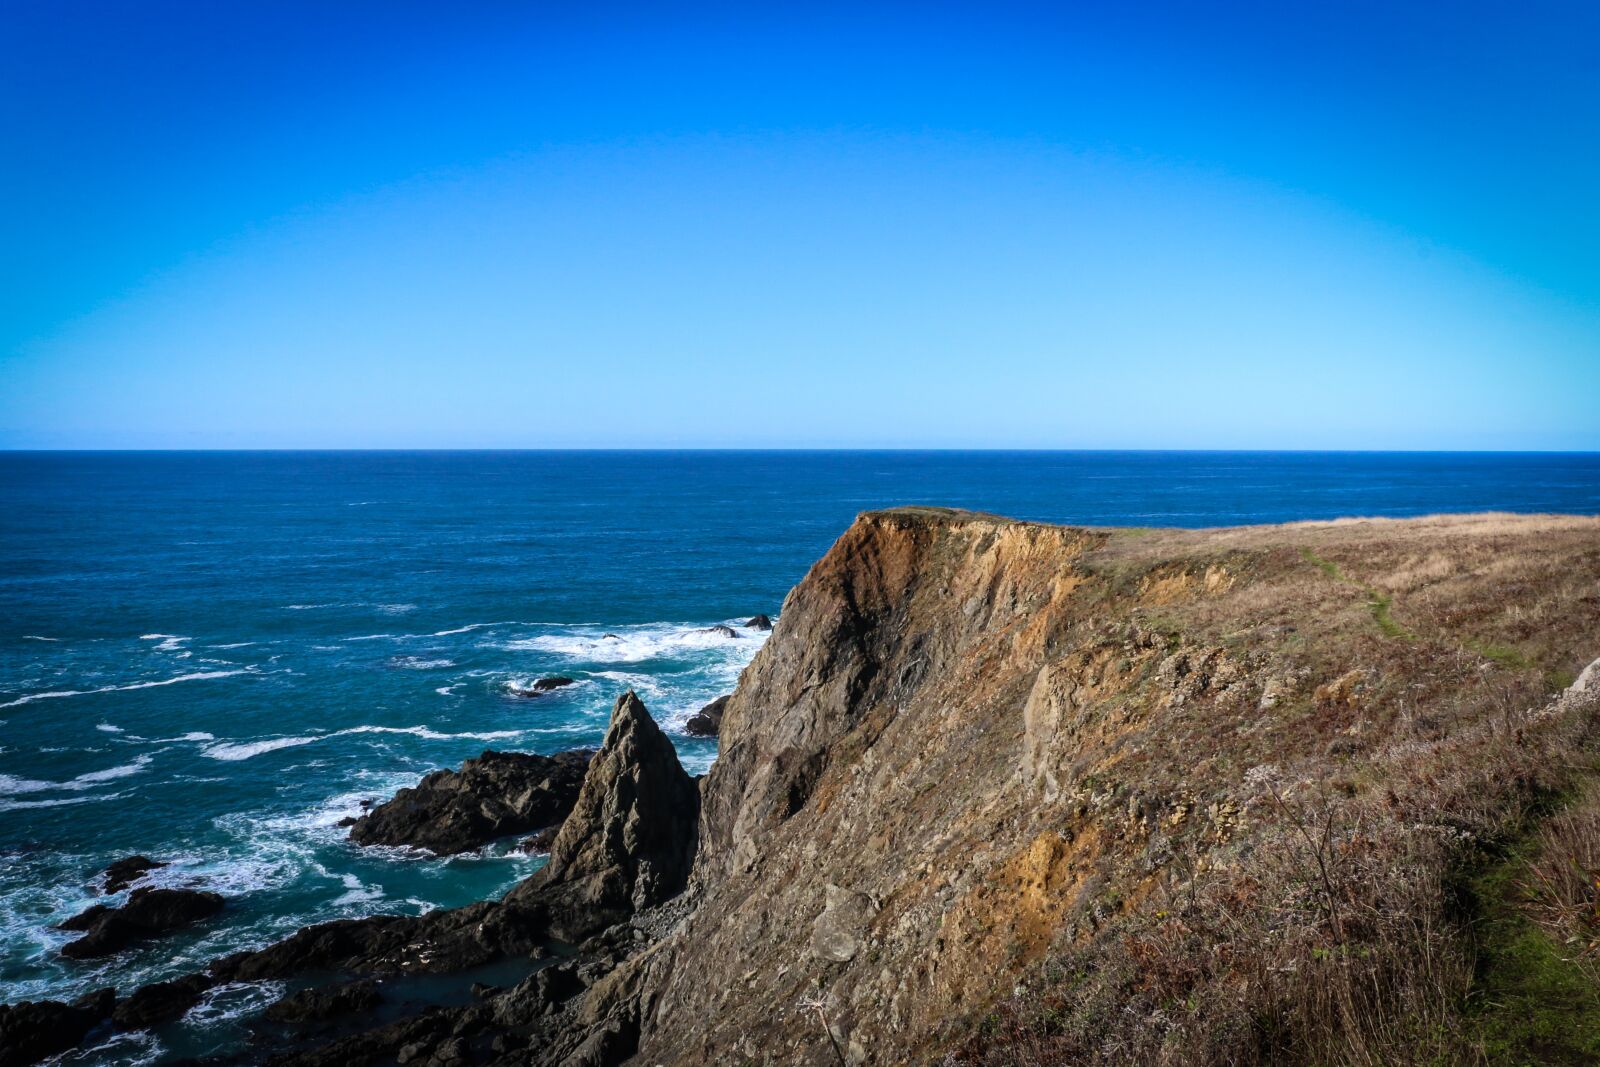 Canon EOS 70D sample photo. Sea, ocean, cliff photography